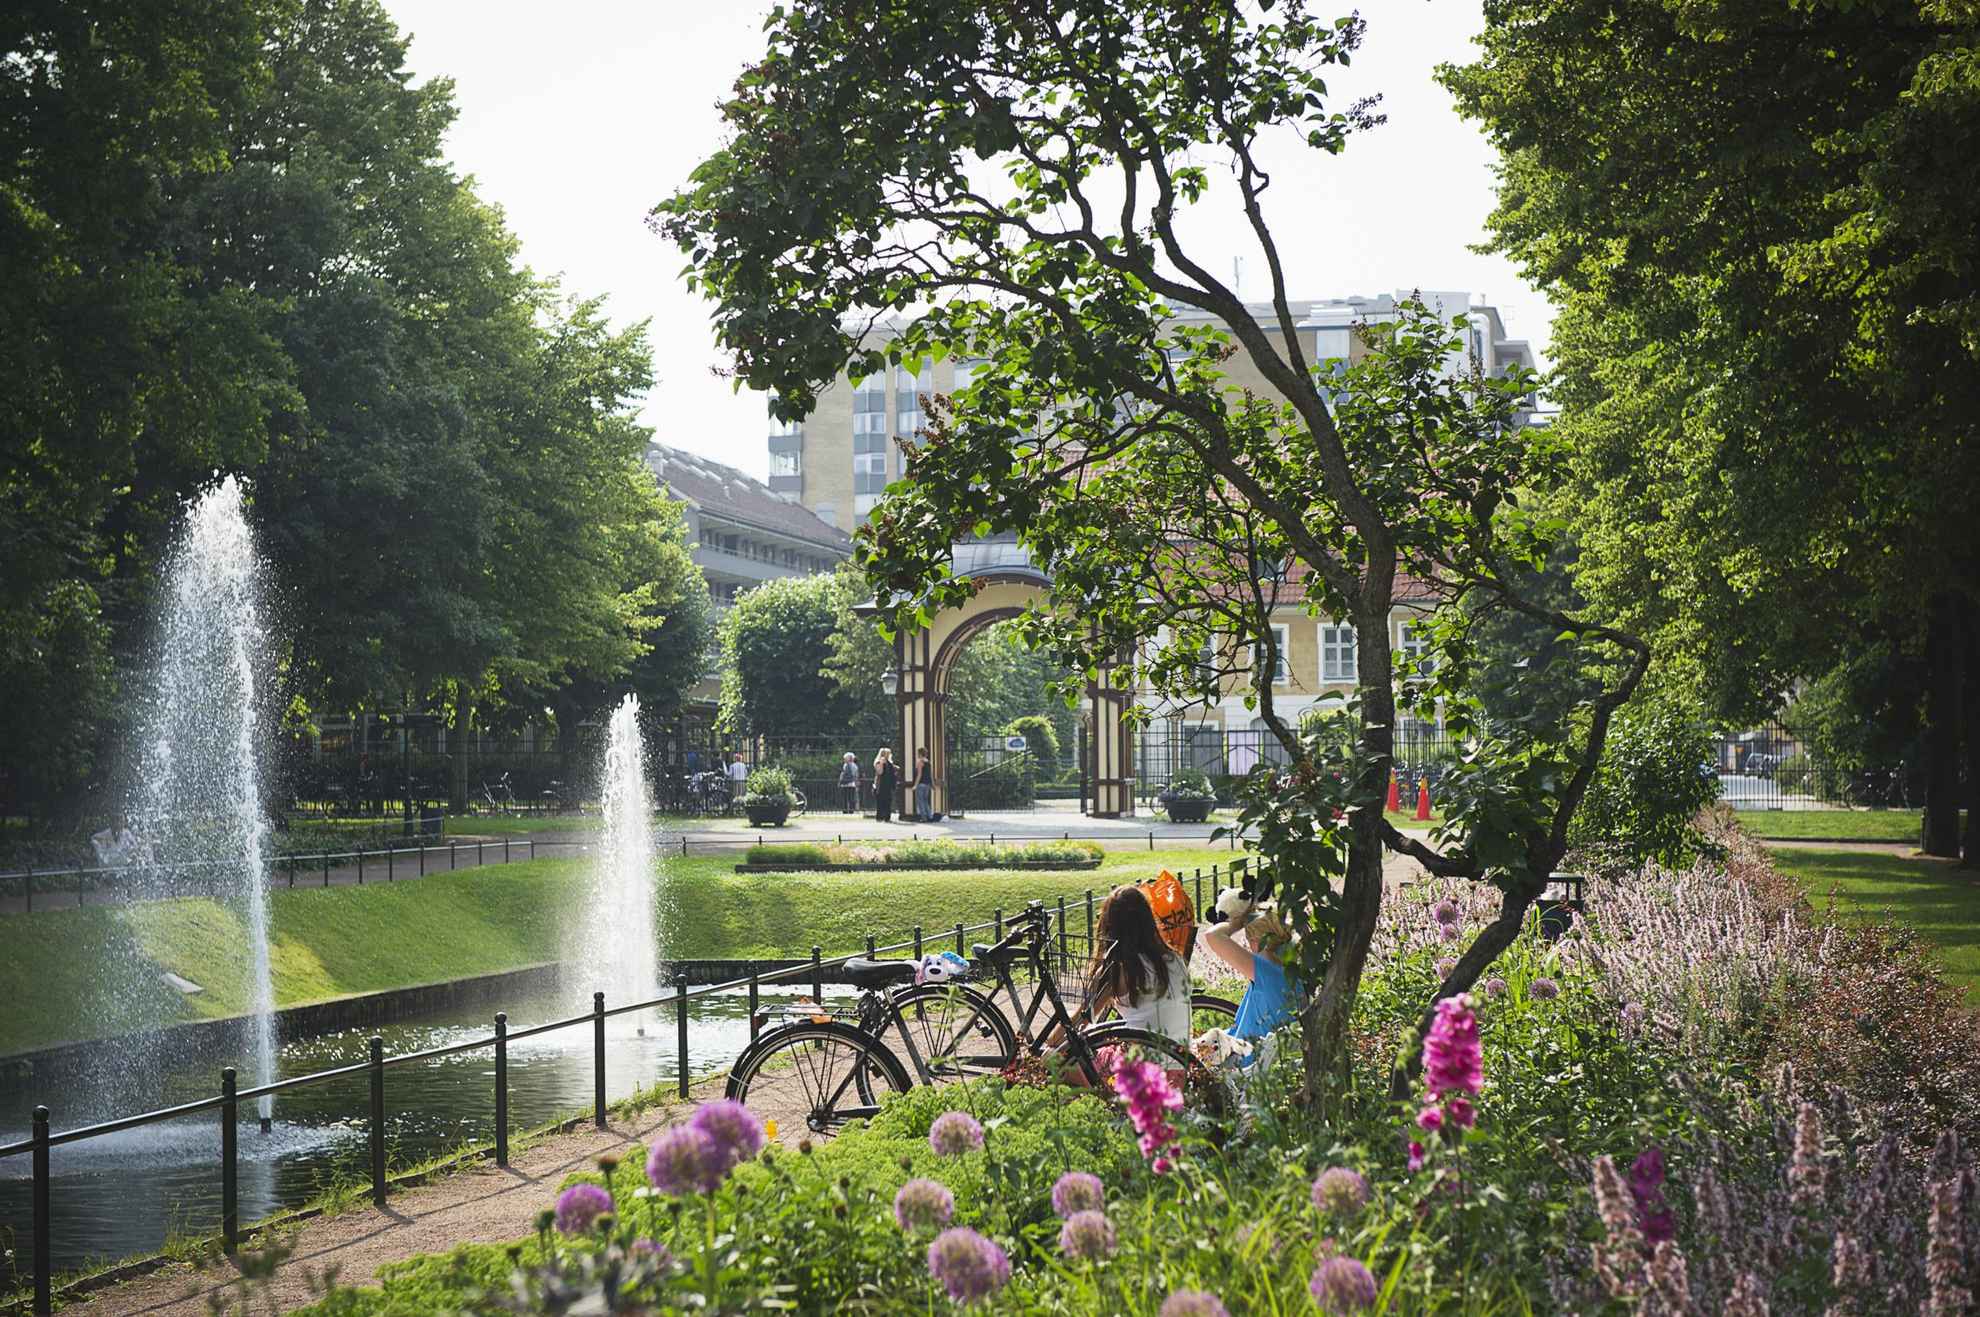 Blumen und Grün in einem Stadtpark. Man sieht den Rücken von zwei Frauen, die neben einem Becken mit zwei Springbrunnen sitzen. Im Hintergrund sieht man den Eingang und einige Gebäude außerhalb des Parks.